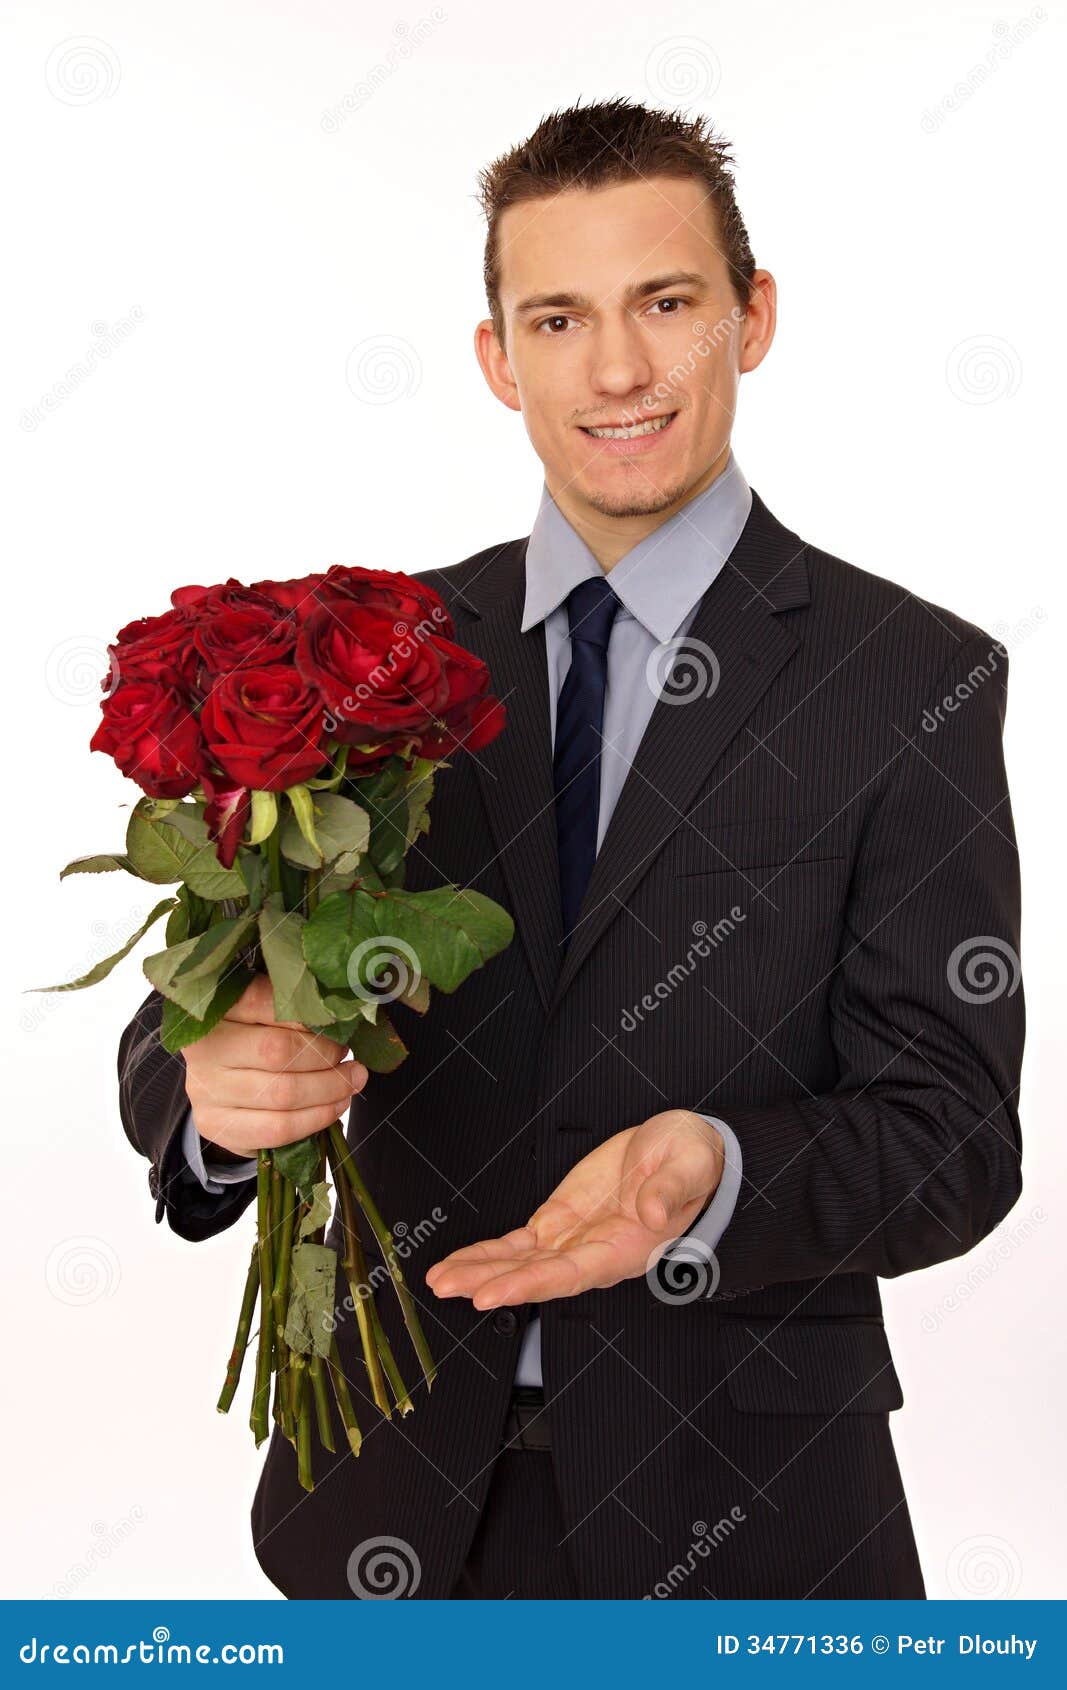 Человек стоит с цветами. Мужчина с цветами в руках. Мужчина с букетом роз. Букет для мужчины. Букет цветов для мужчины.